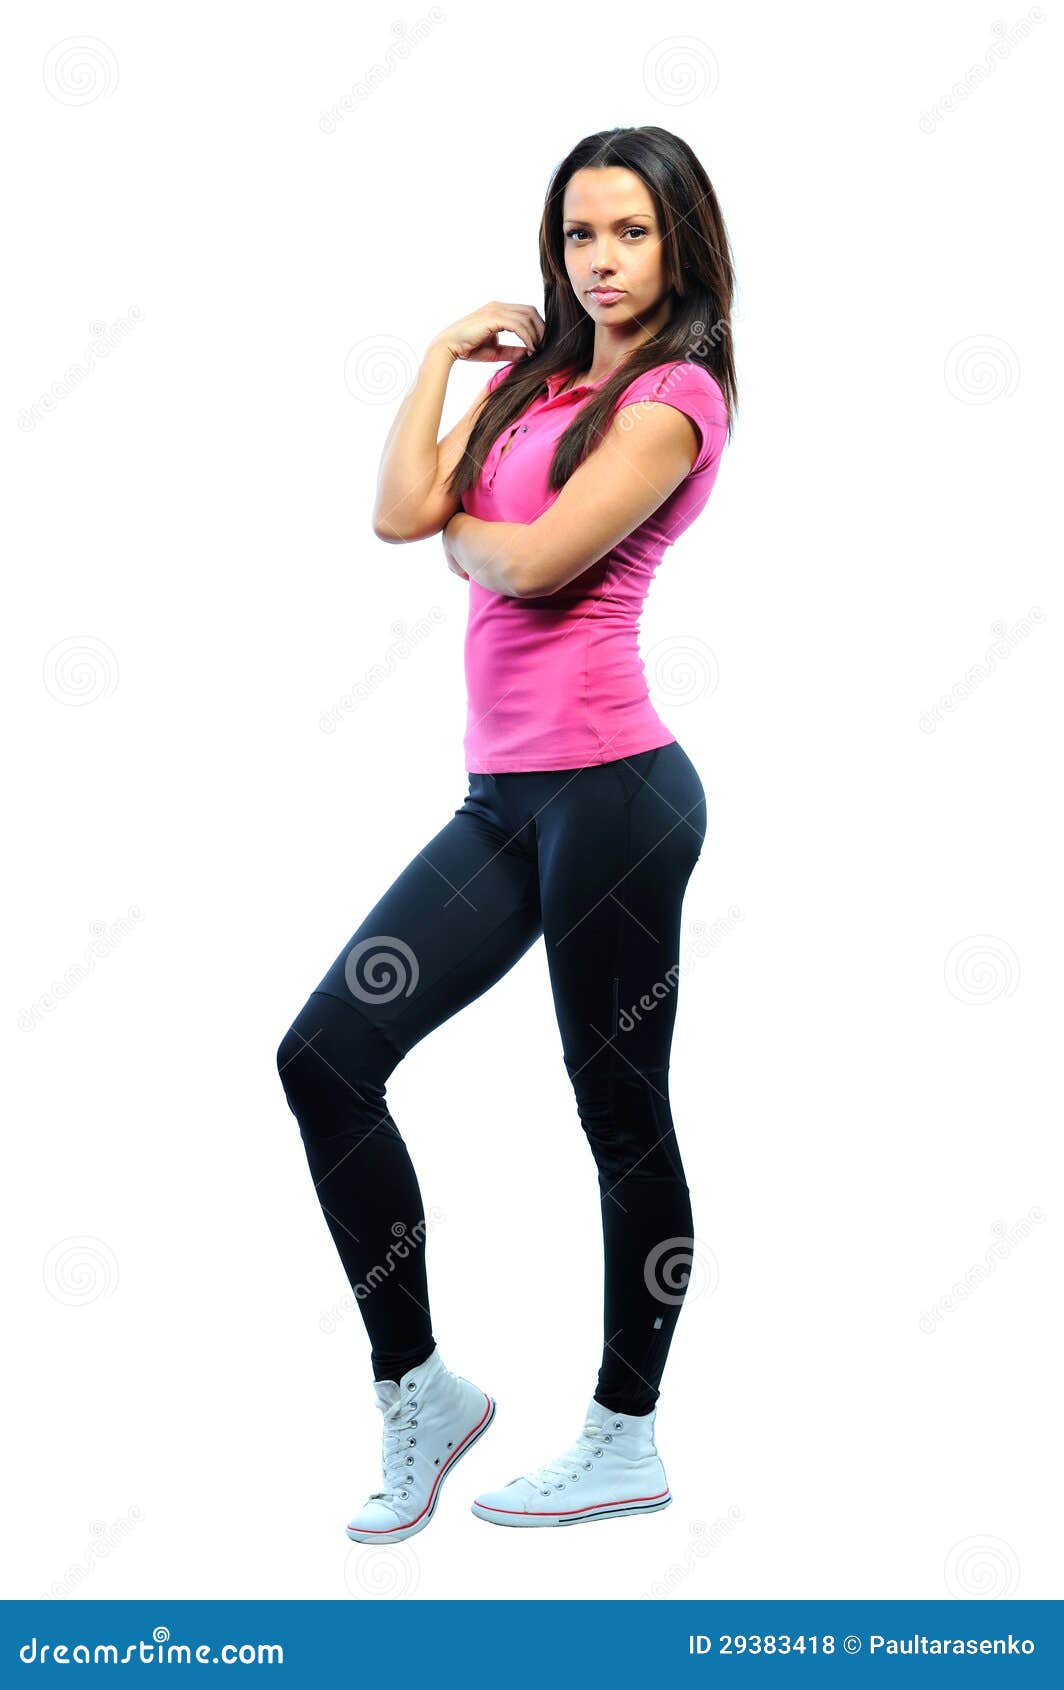 Full-frame Fitness Woman Portrait Stock Photo - Image of brunette ...